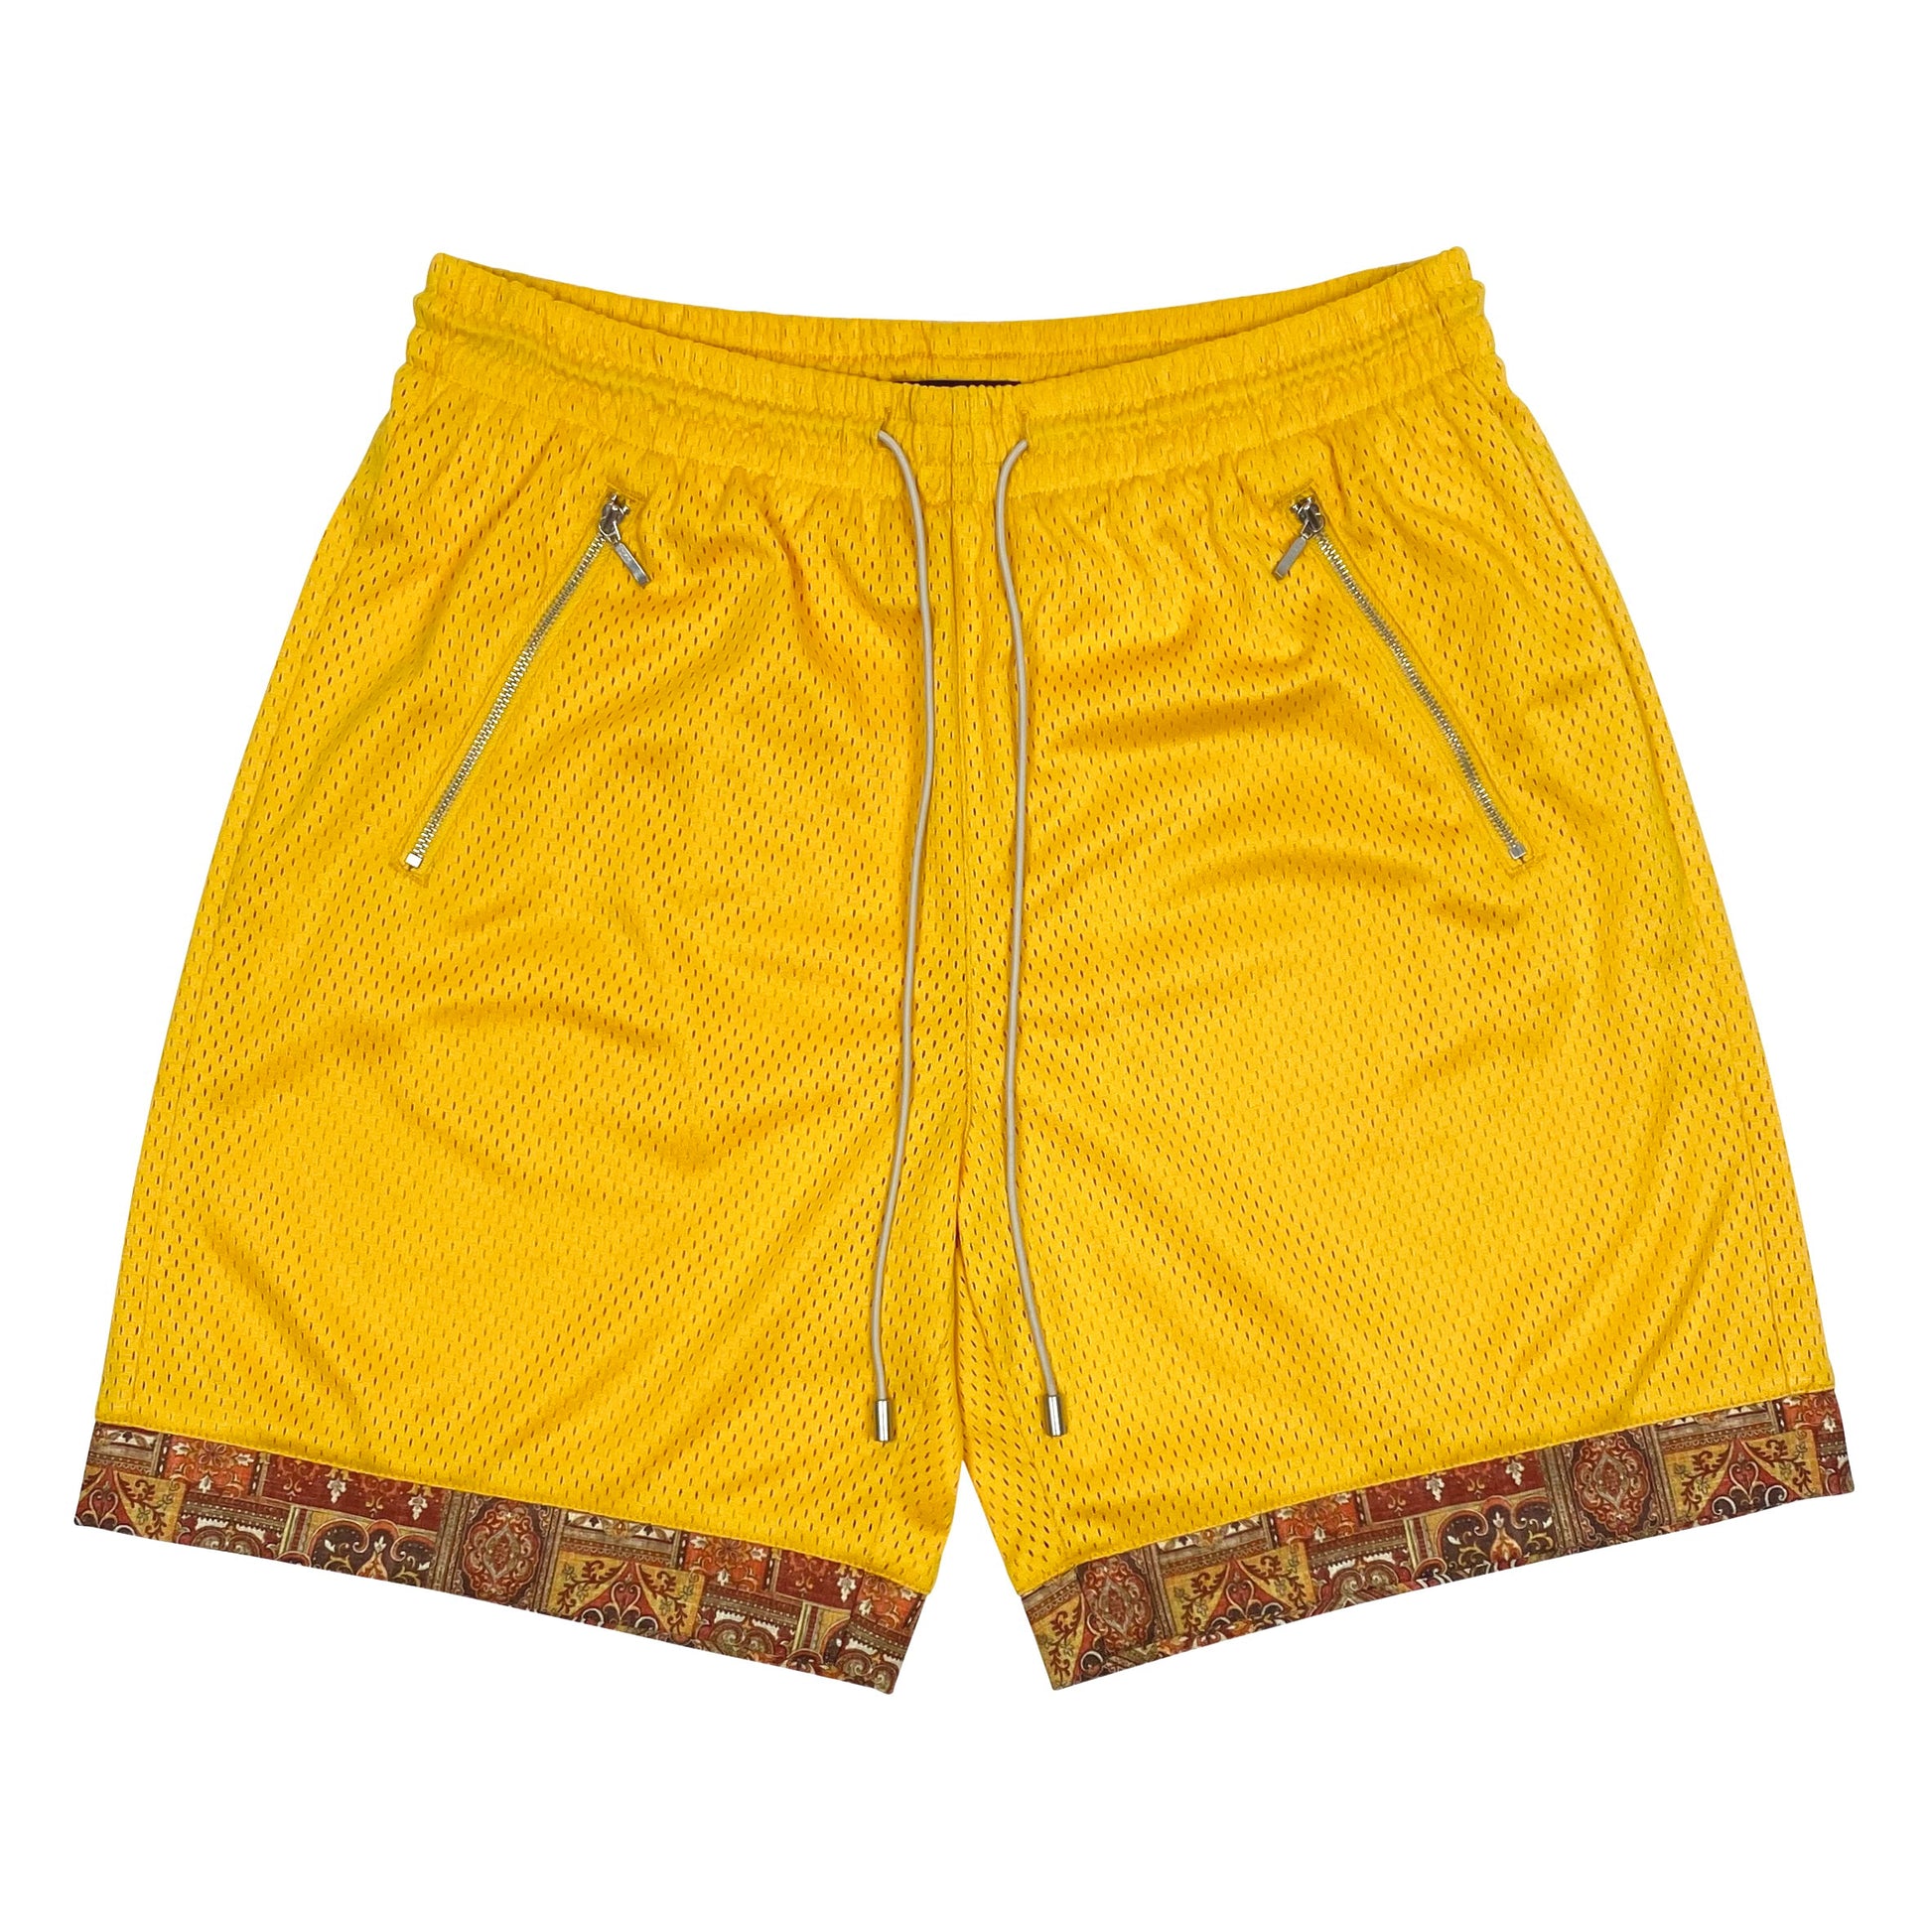 BLEDLA-BLED-Mesh Shorts-Yellow Shorts-Persian Short-Iran Short-Persian Rug Shorts-Basketball Shorts-Mosaic Shorts-Fashion Shorts